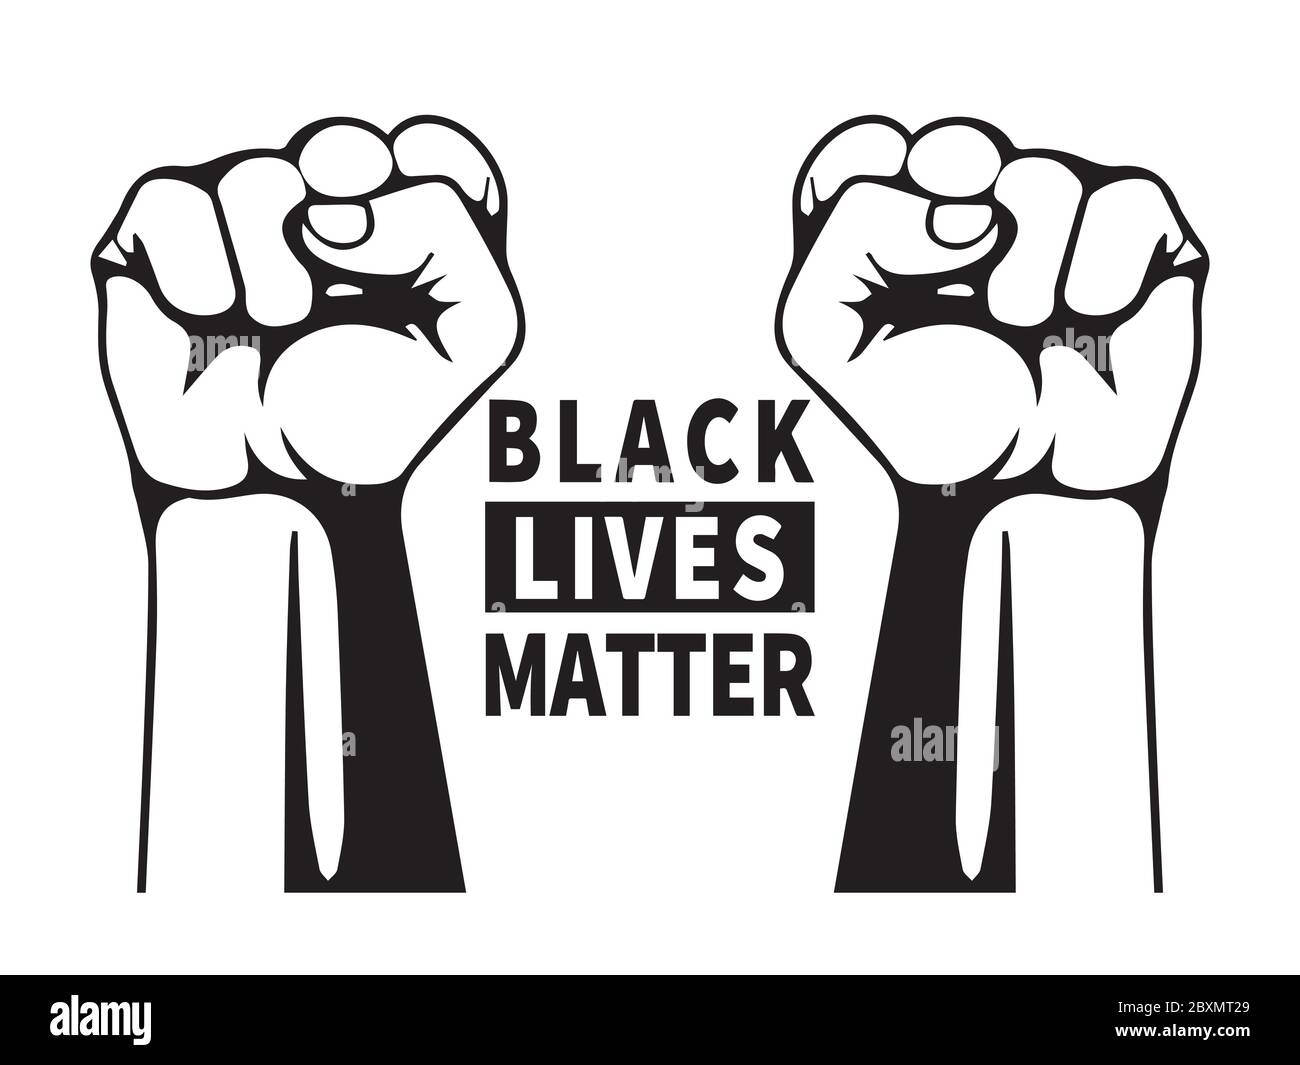 Schwarz lebt Materie Text mit zwei Fäusten. Piktogramm Illustration Darstellung Black Lives Matter Text mit 2 Fäusten. Schwarz-weiße EPS-Vektordatei. Stock Vektor